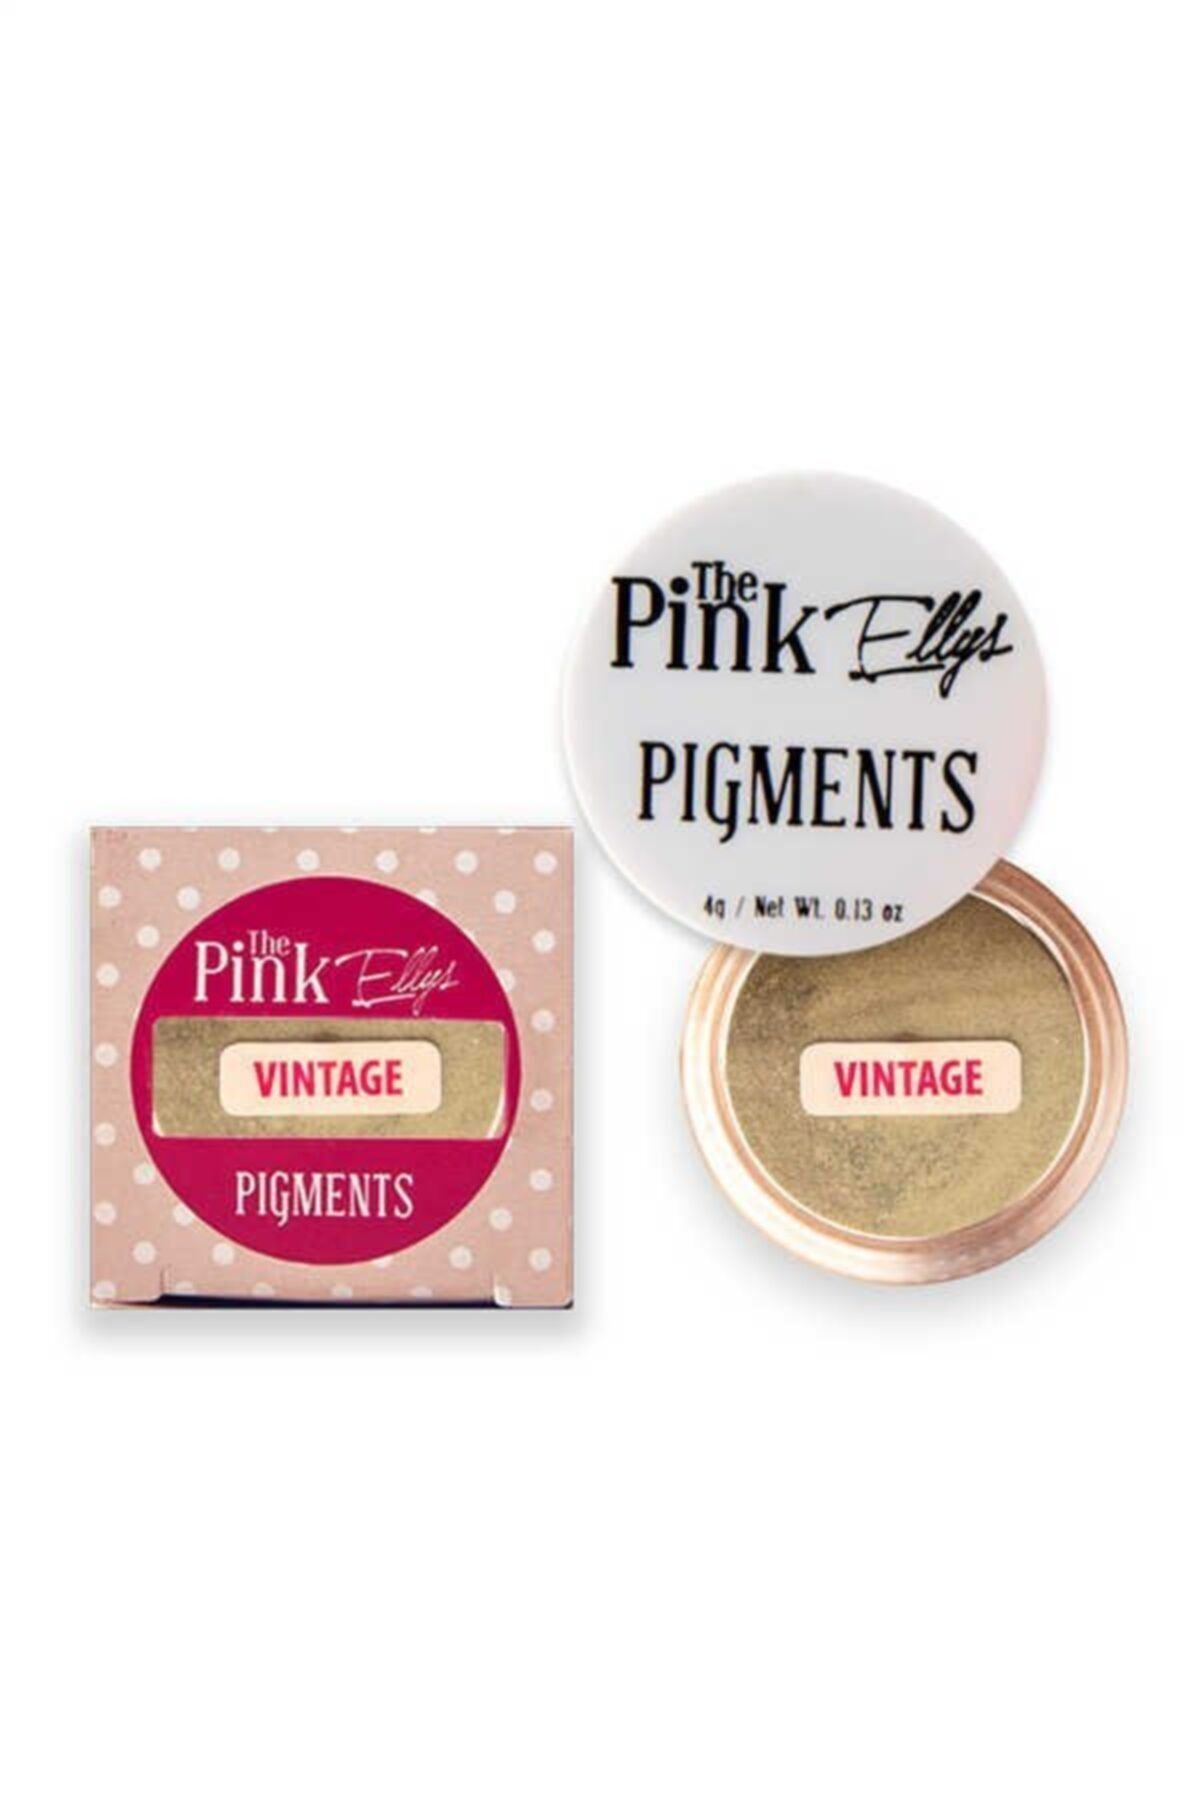 The Pink Ellys Pigments Vintage